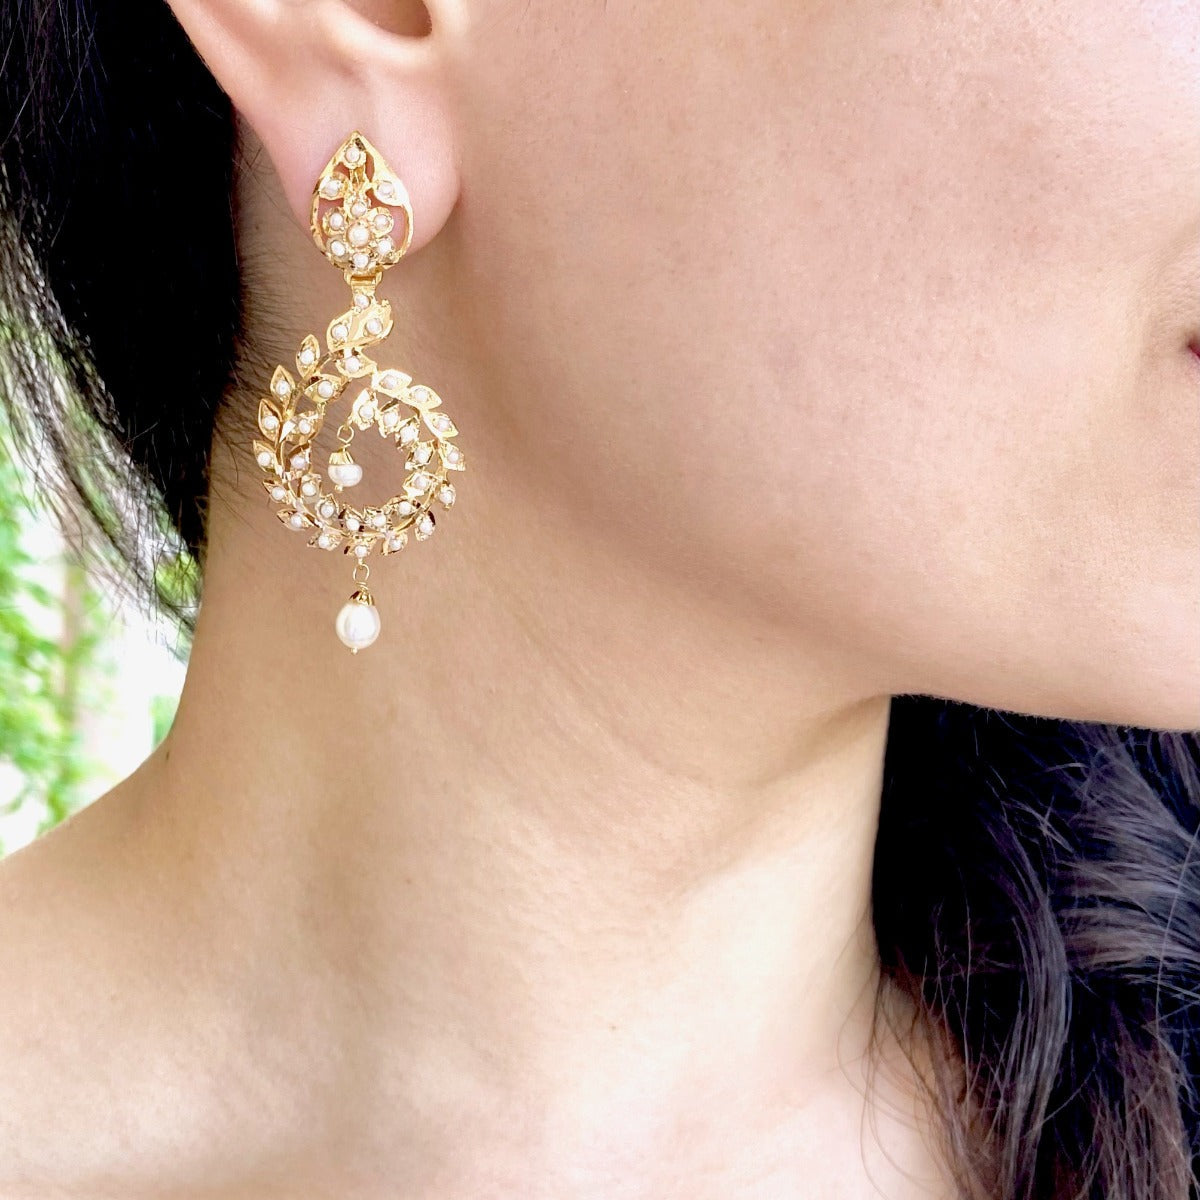 pearl drop earrings on 22k gold